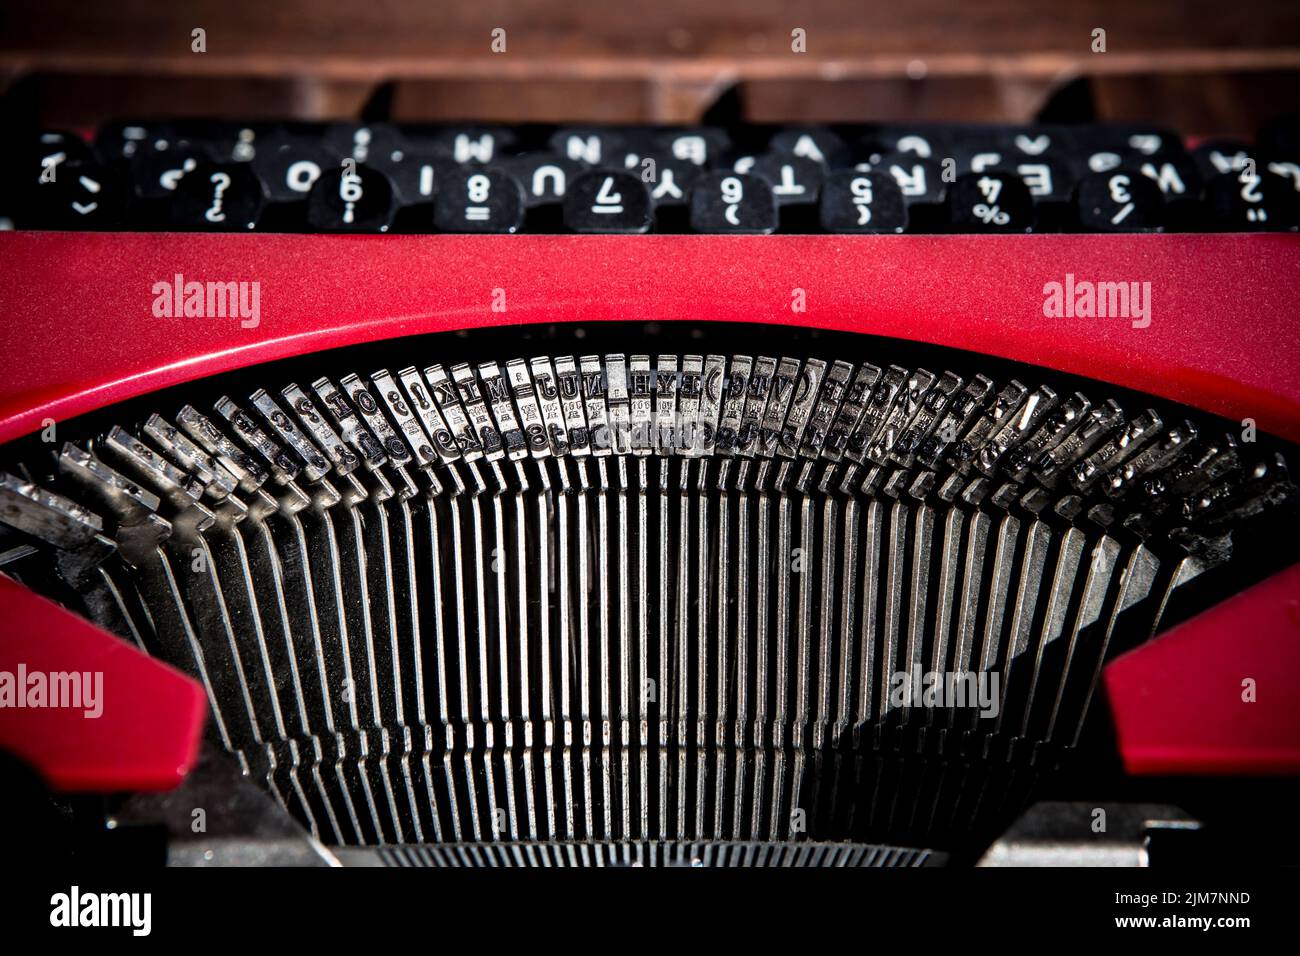 Red vintage typewriter. Typebars closeup Stock Photo